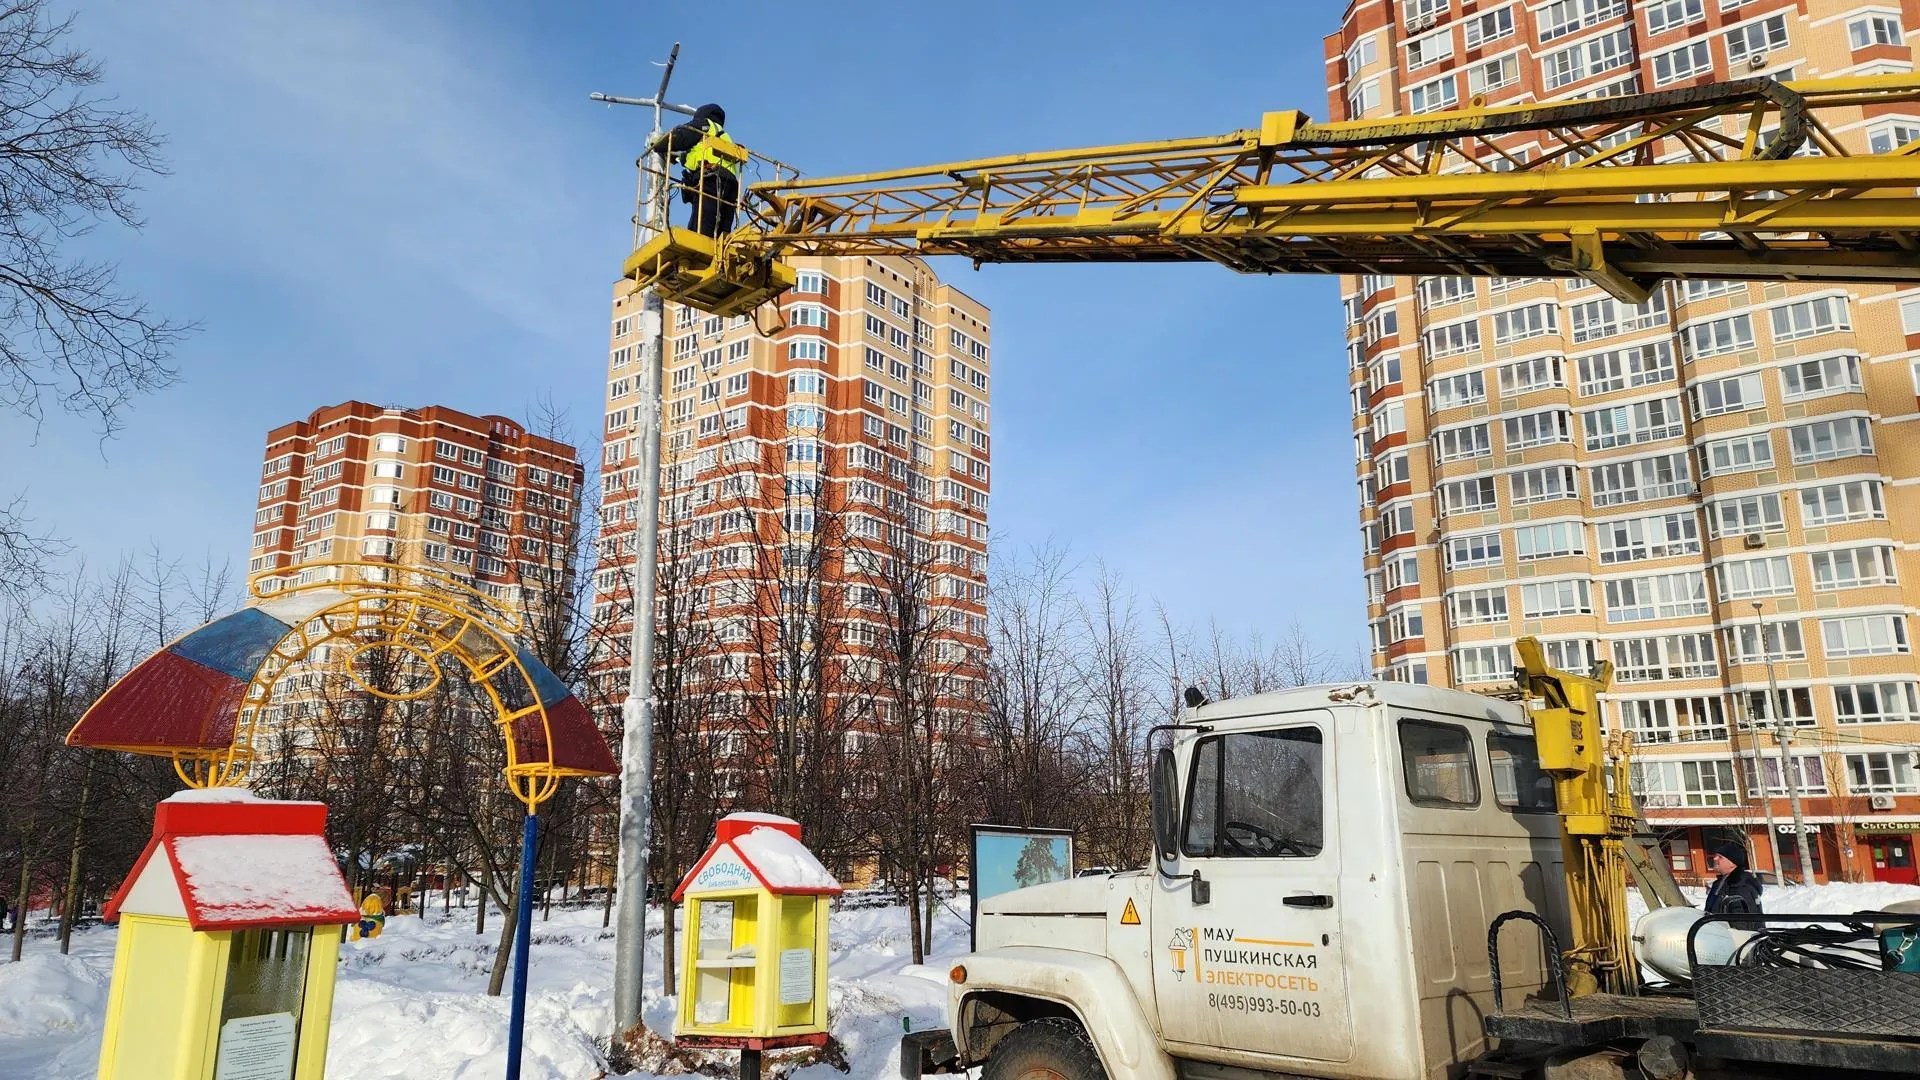 Дополнительную опору освещения с тремя светильниками установили в Городском округе Пушкинский в ивантеевском сквере